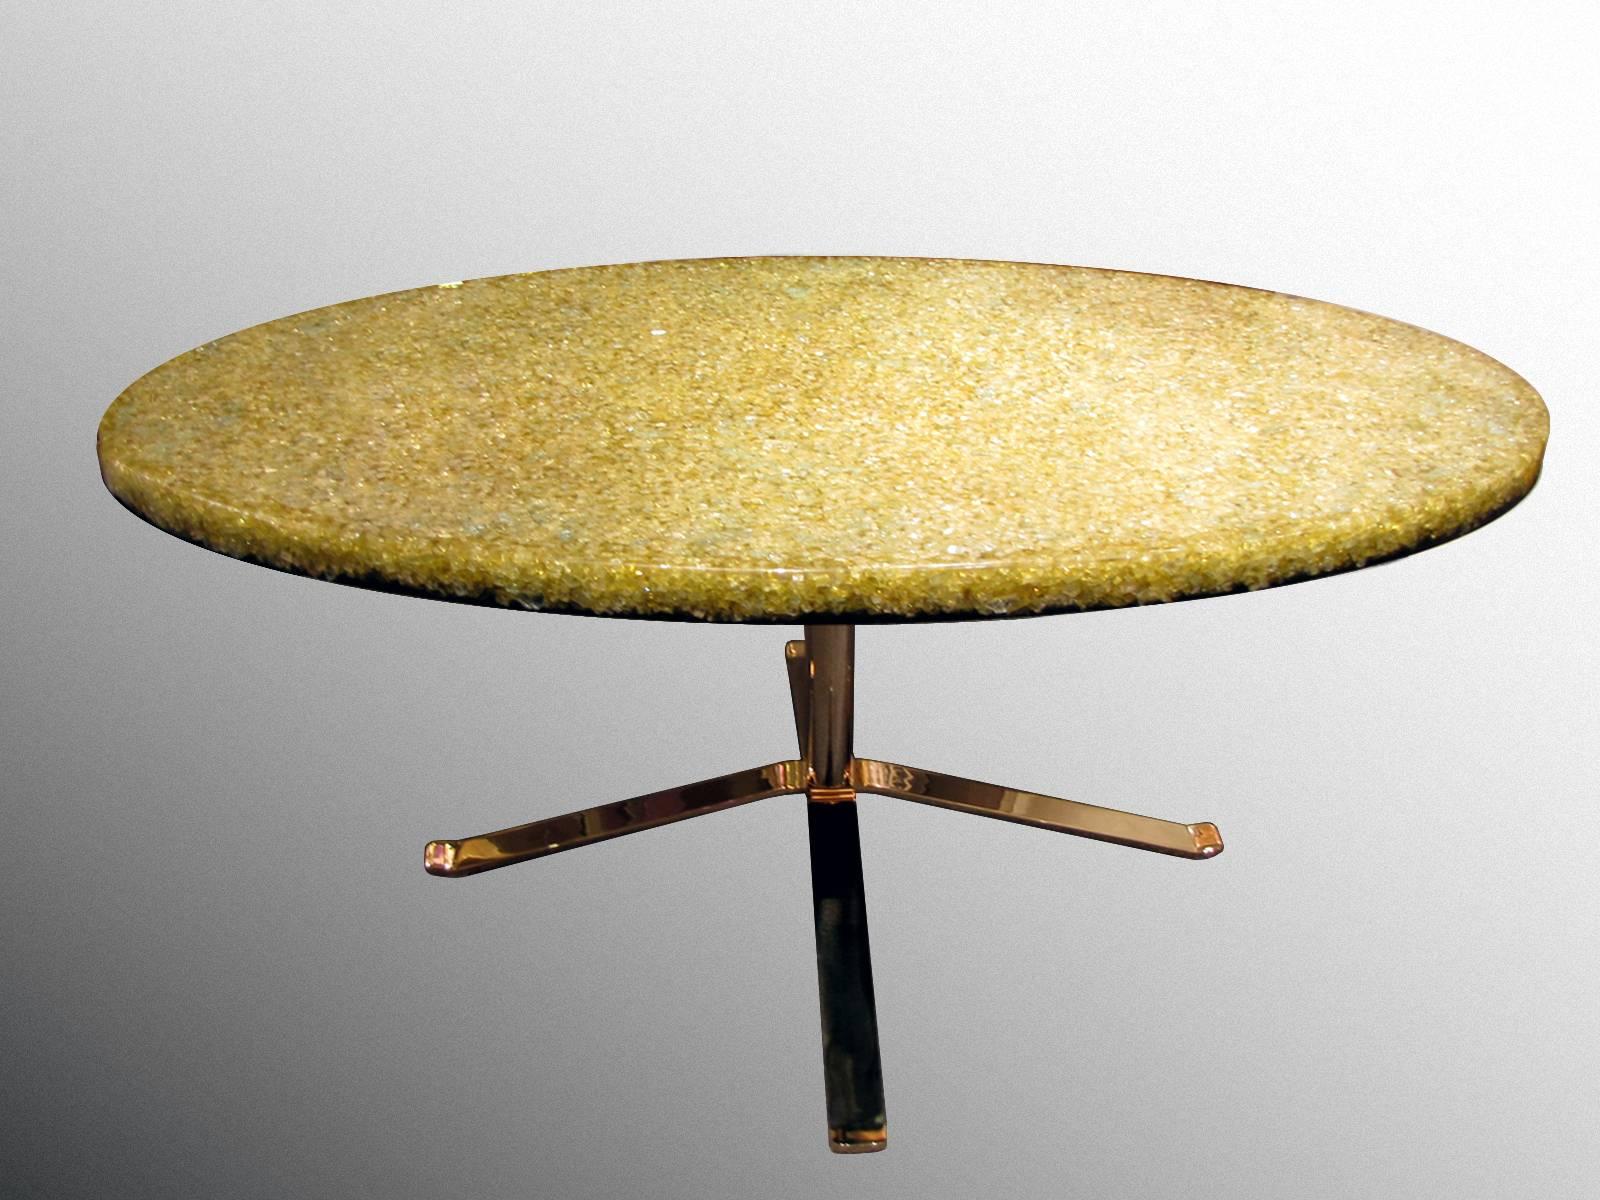 Table basse à plateau ovale en résine, vers 1970, par Pierre Giraudon (1923-2012).
Dessus en résine jaune translucide avec de nombreuses inclusions de verre. Le dessous du plateau est en résine noire. Quatre pieds croisés dans une base en acier